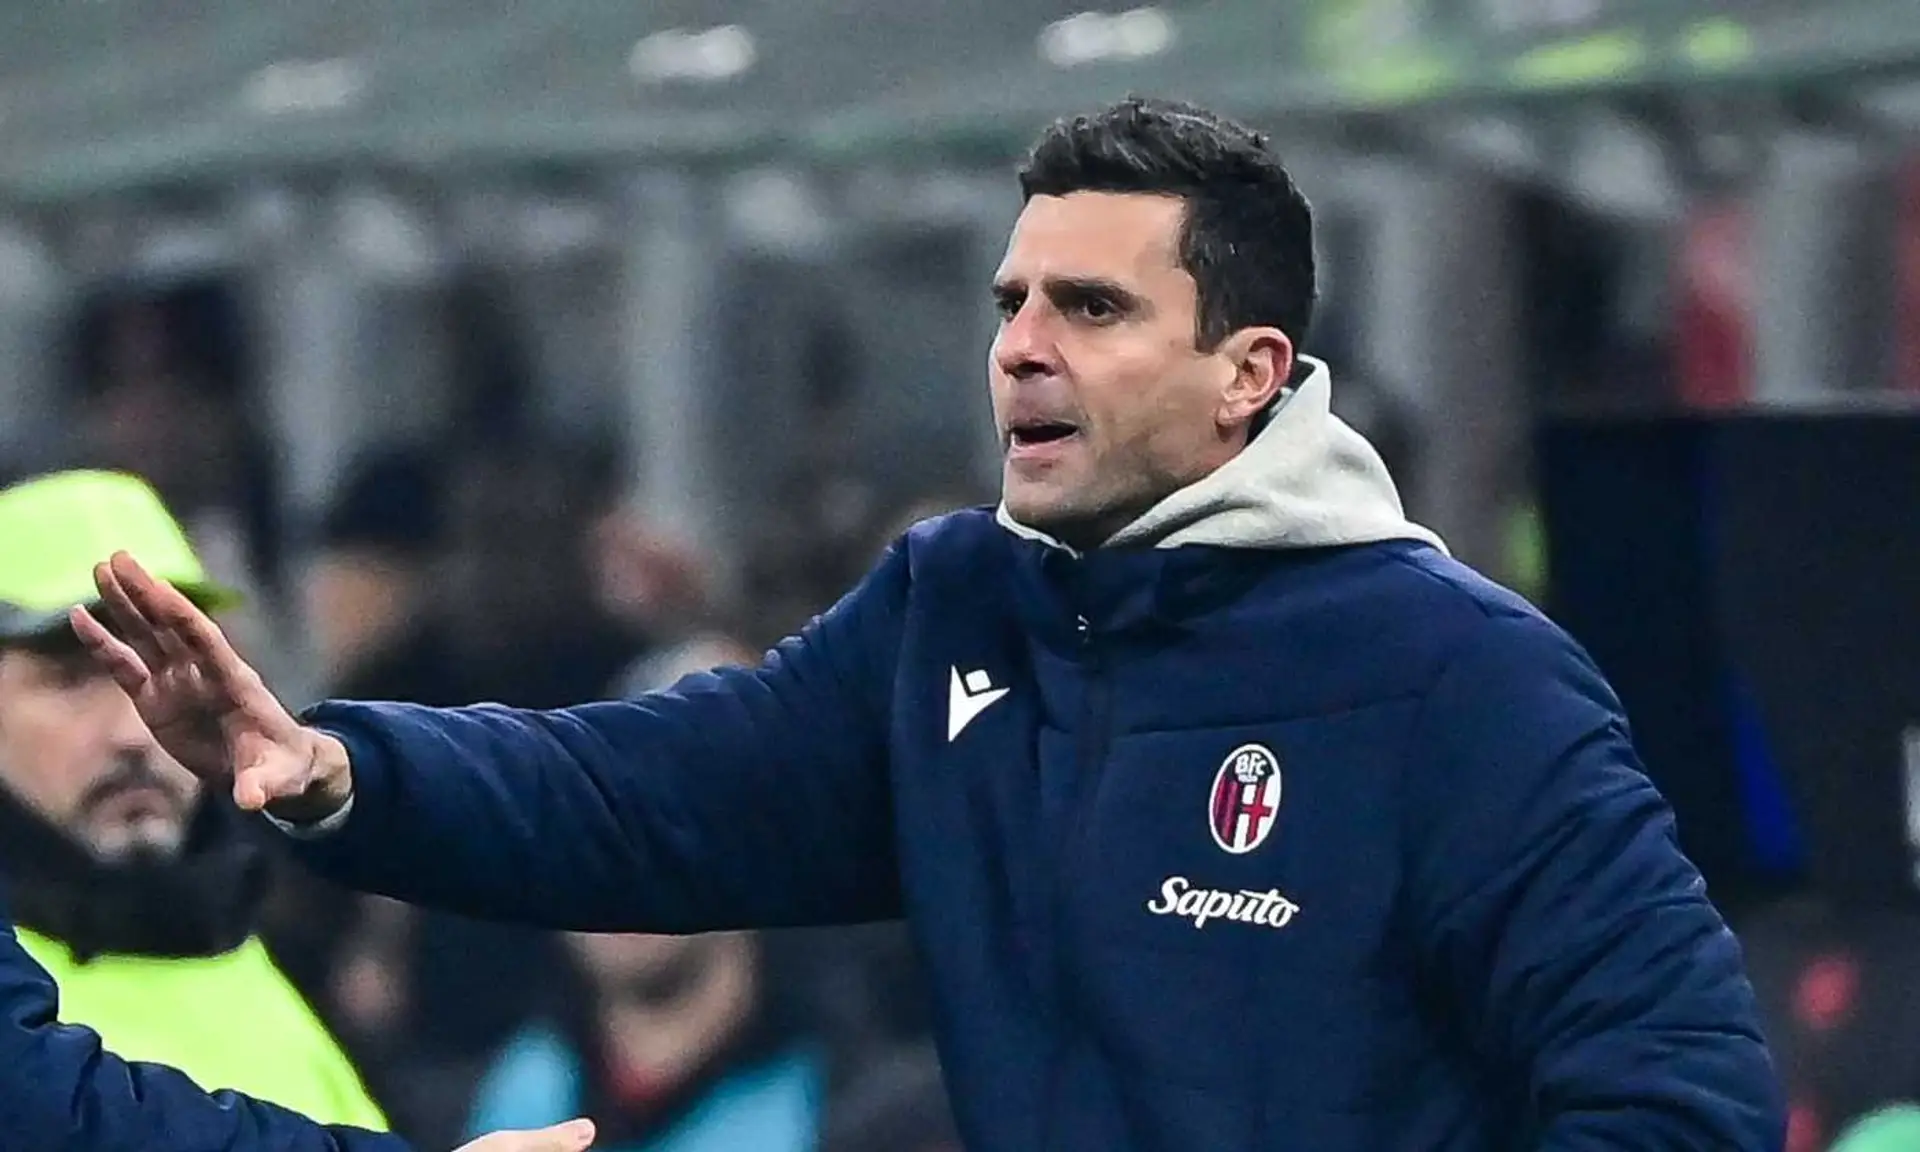 L'entraîneur de Thiago Motta ferme les portes au Napoli : "Il ne viendrait pas même si de Laurentiis lui achetait ZIrkzee"